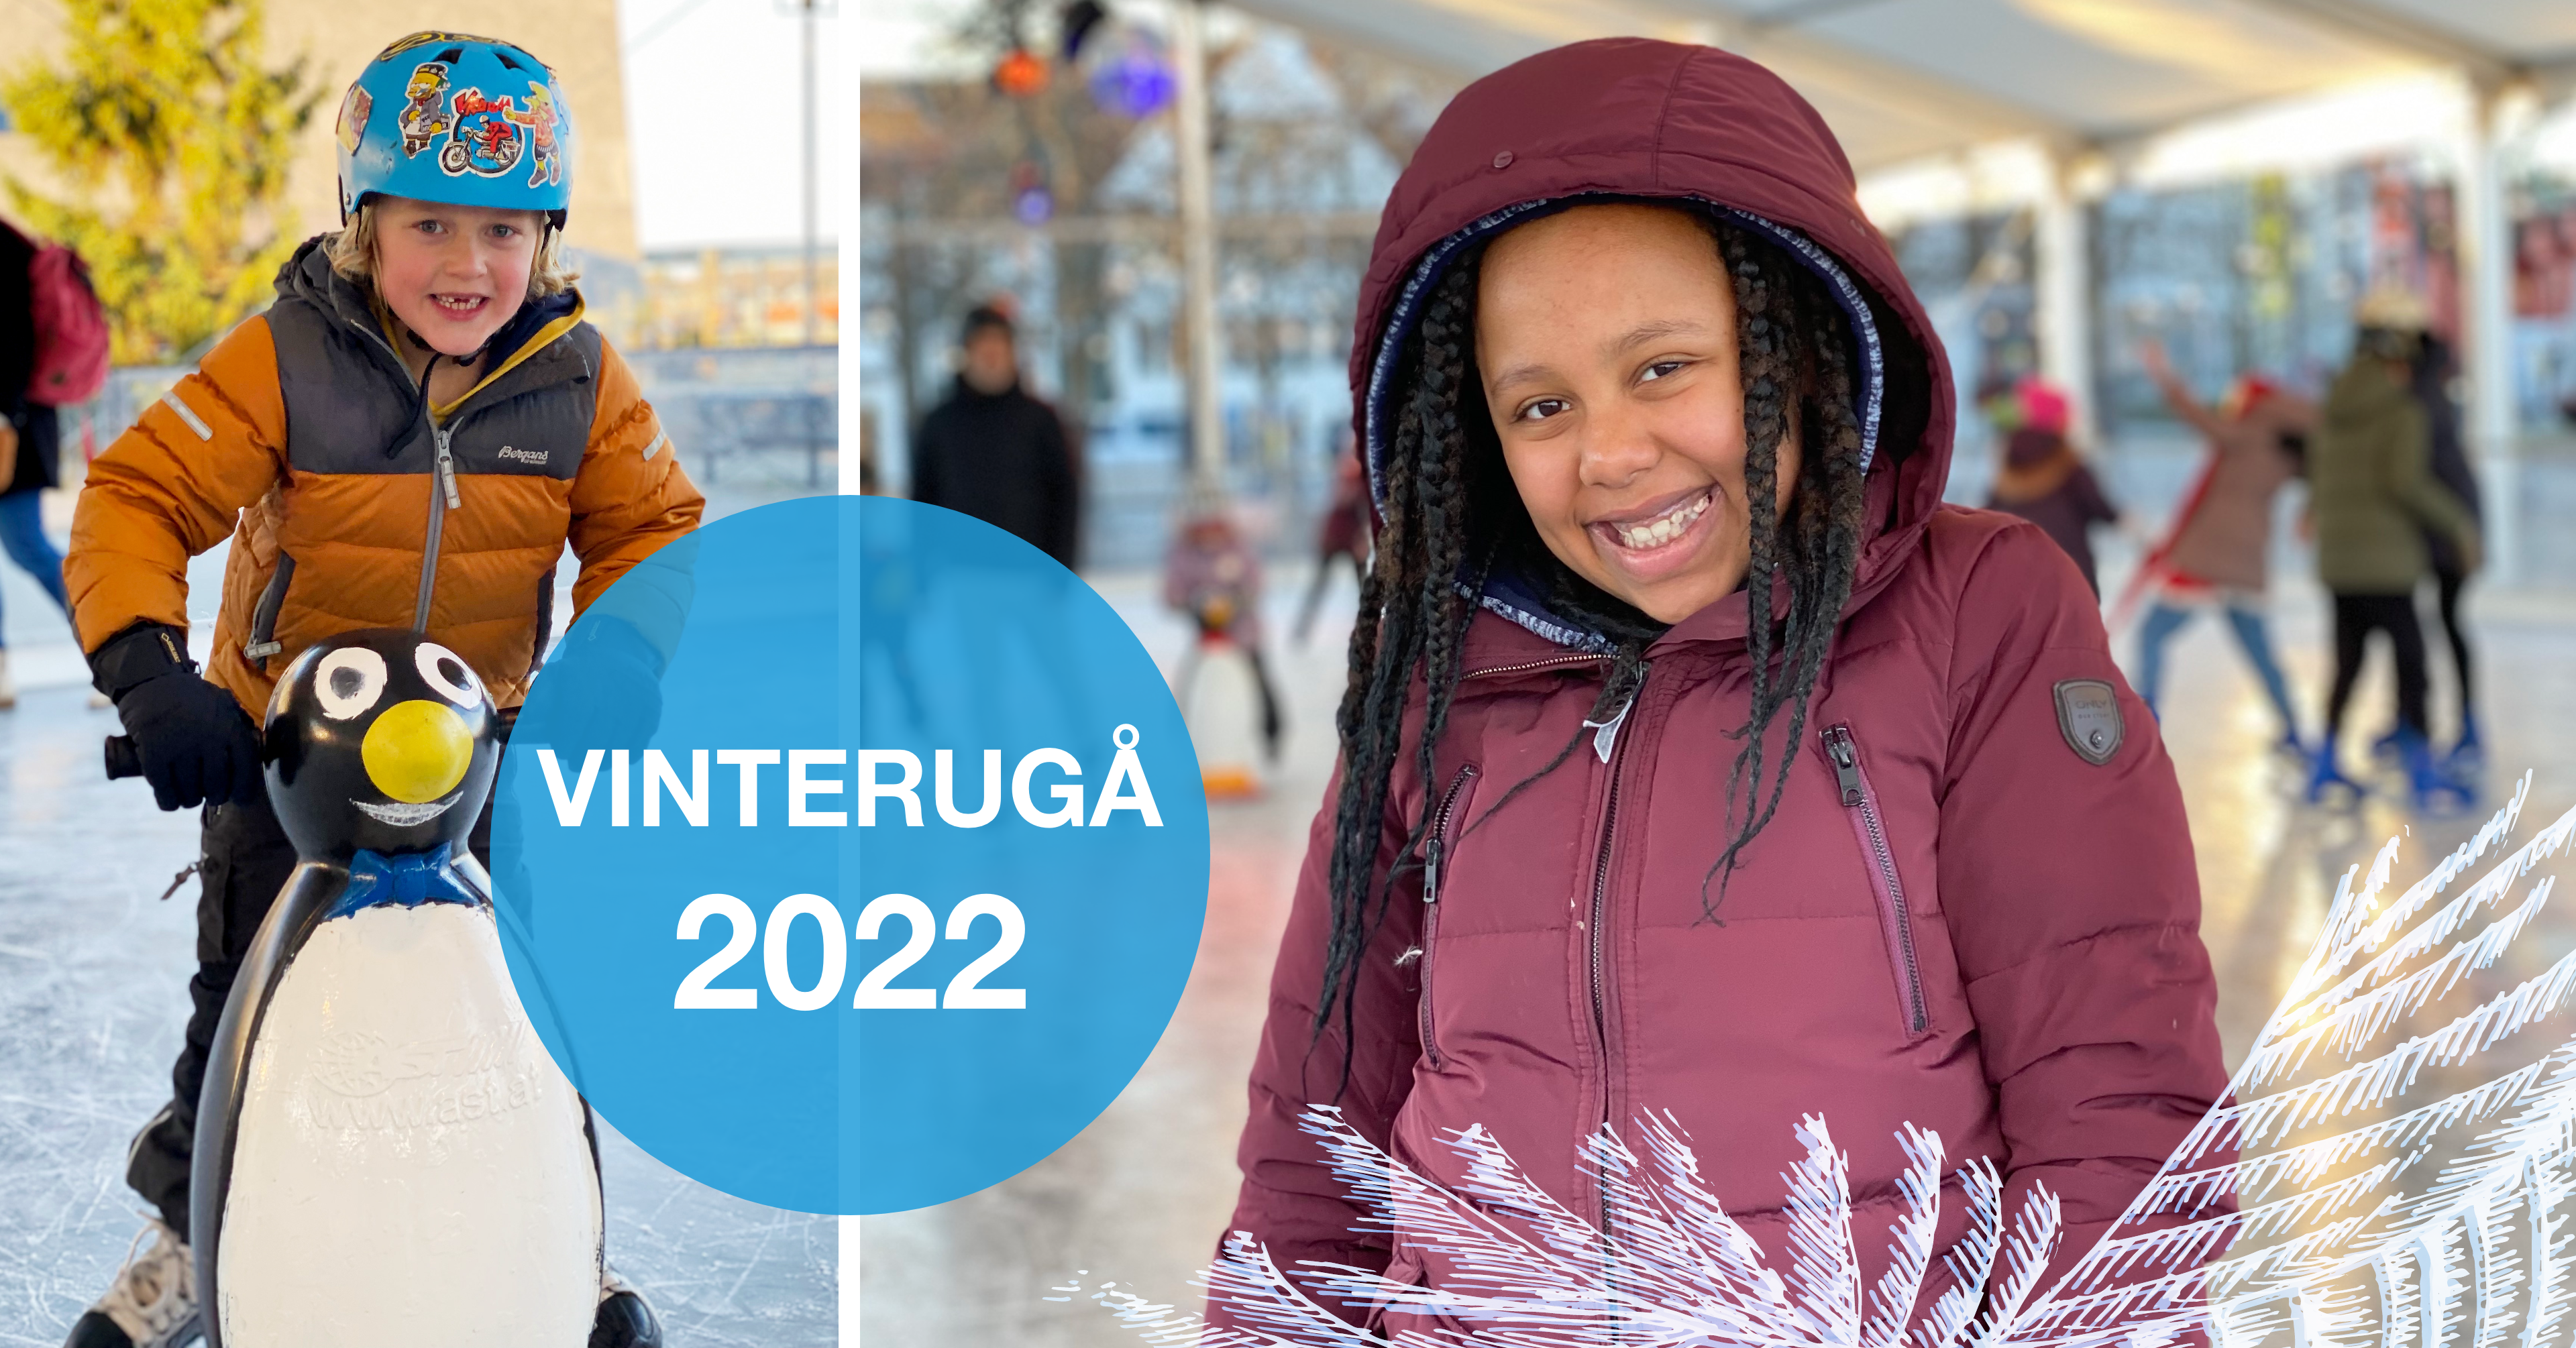 Vinterugå 2022 Randaberg hundre år